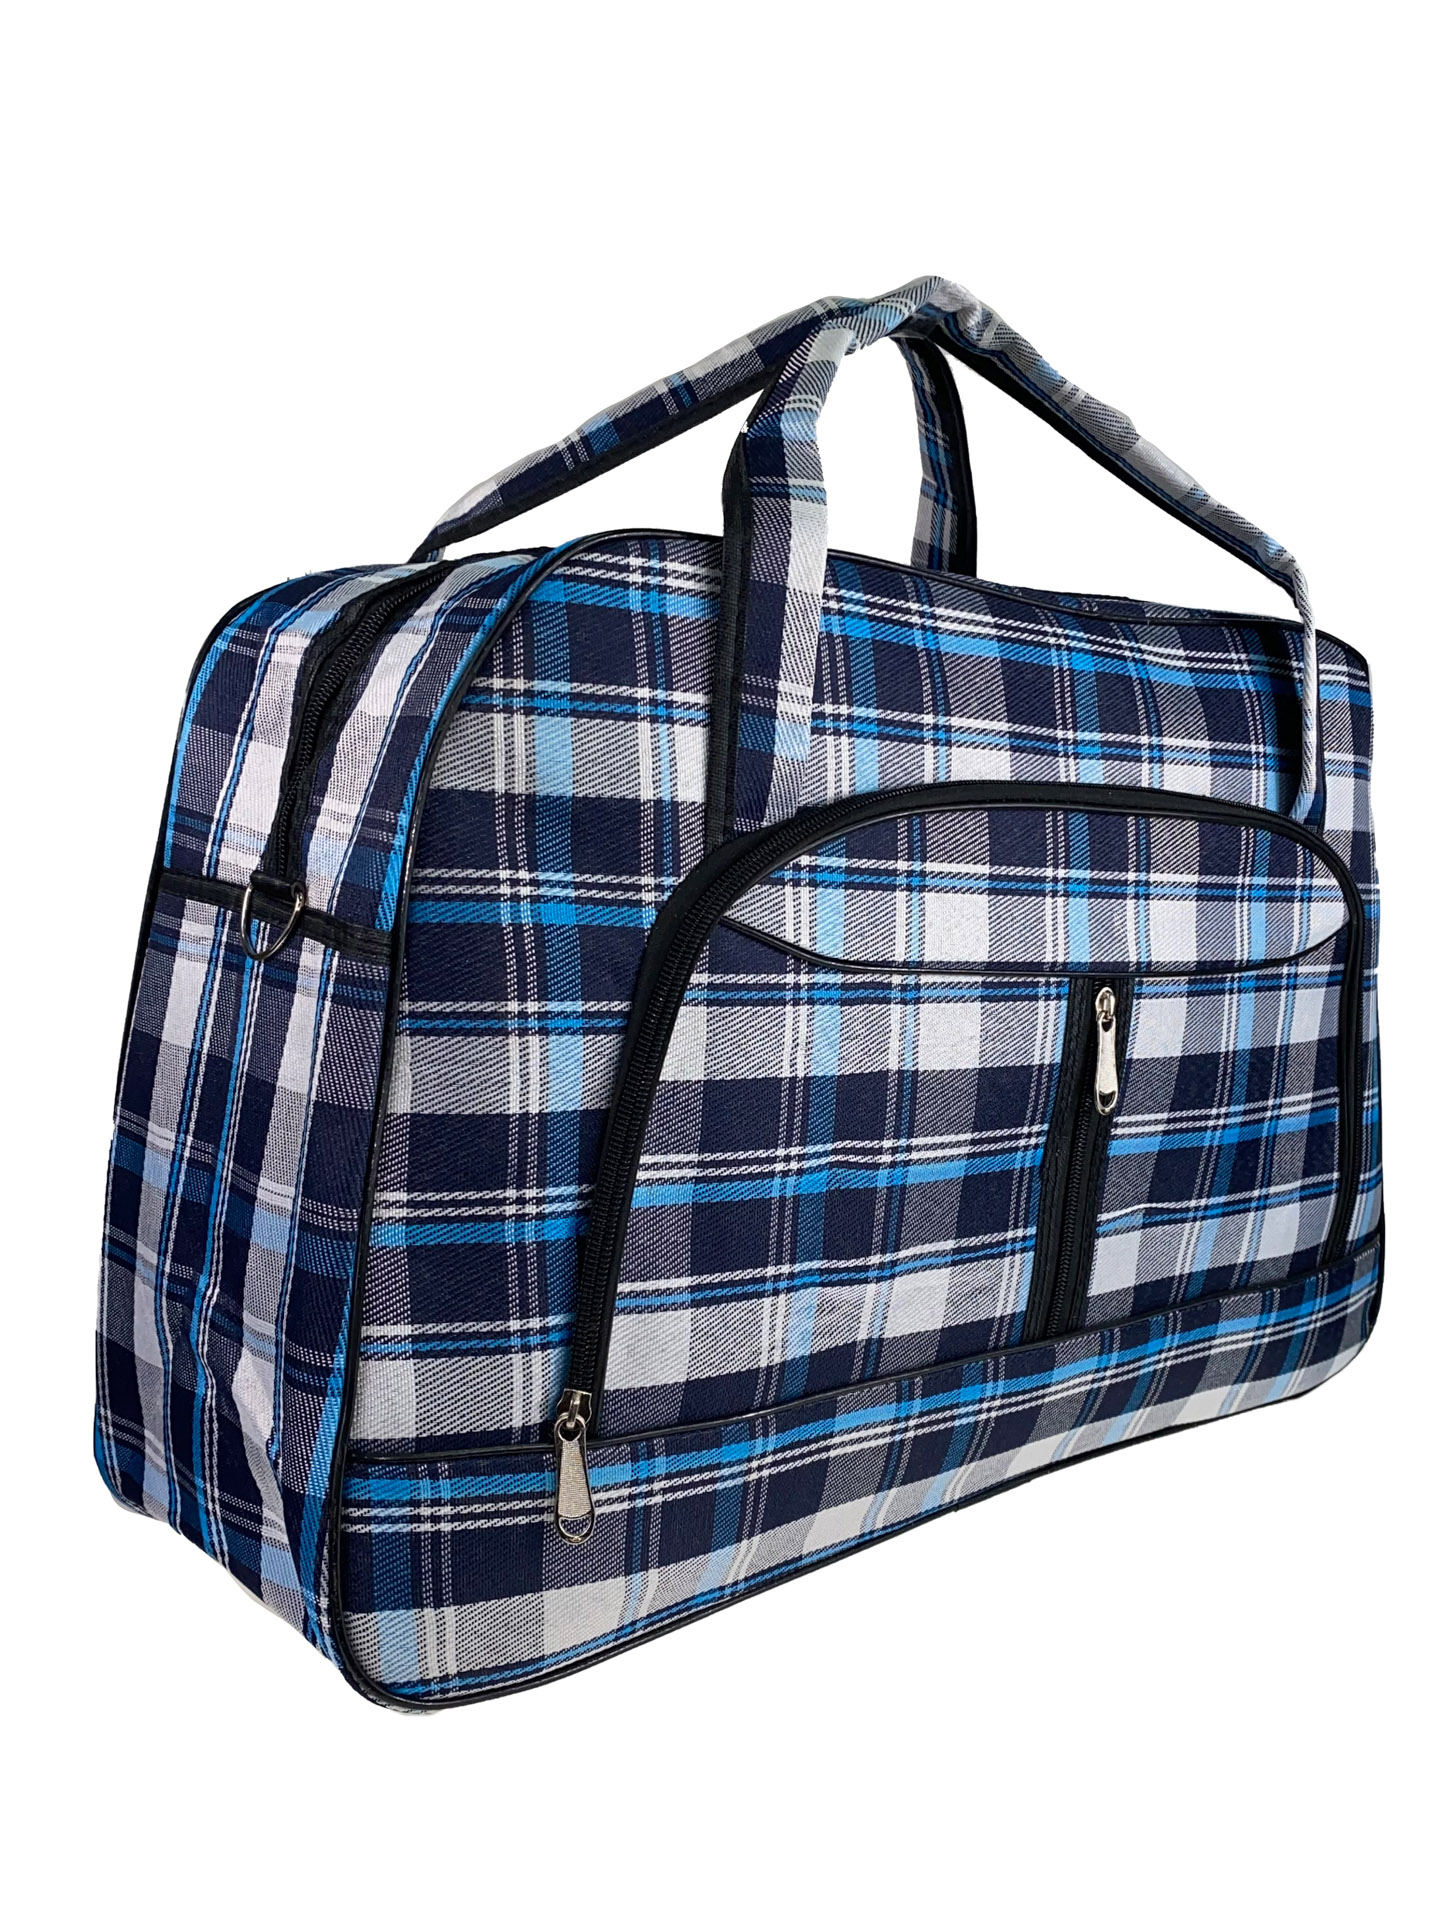 Женская дорожная сумка из текстиля в клетку, оттенки синего с белым